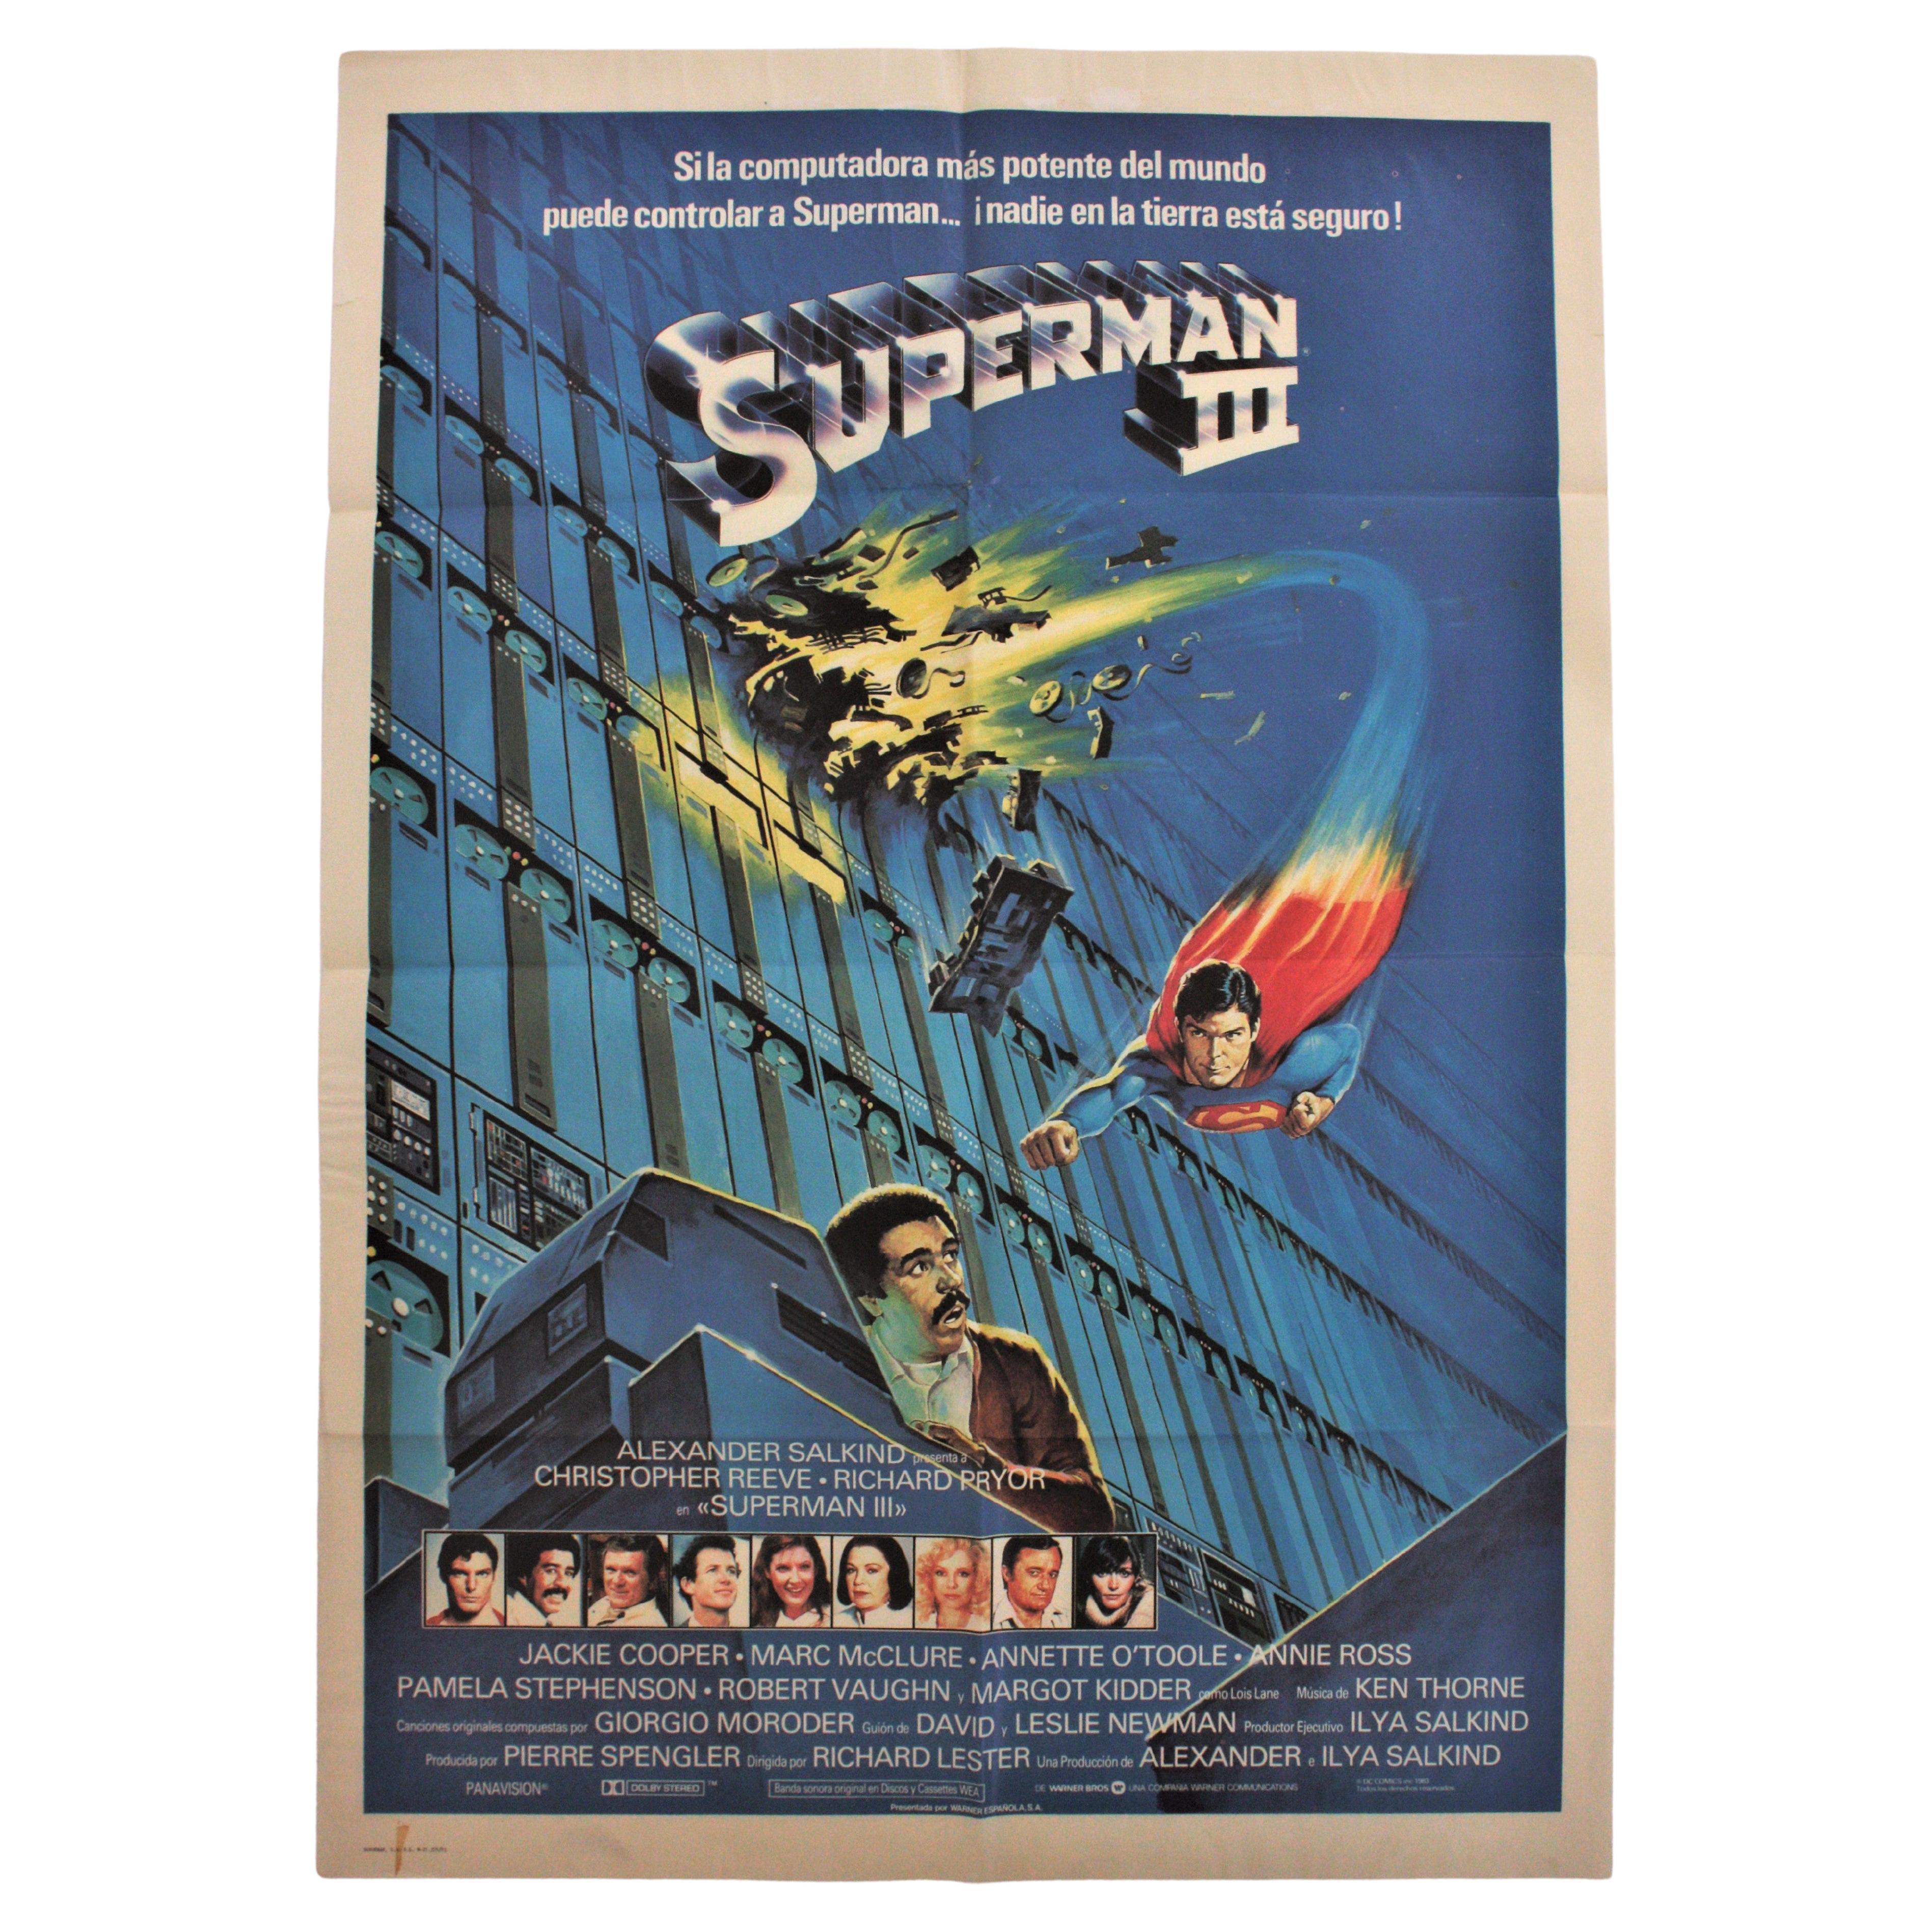 Spanisches Superman III.-Filmplakat, 1983